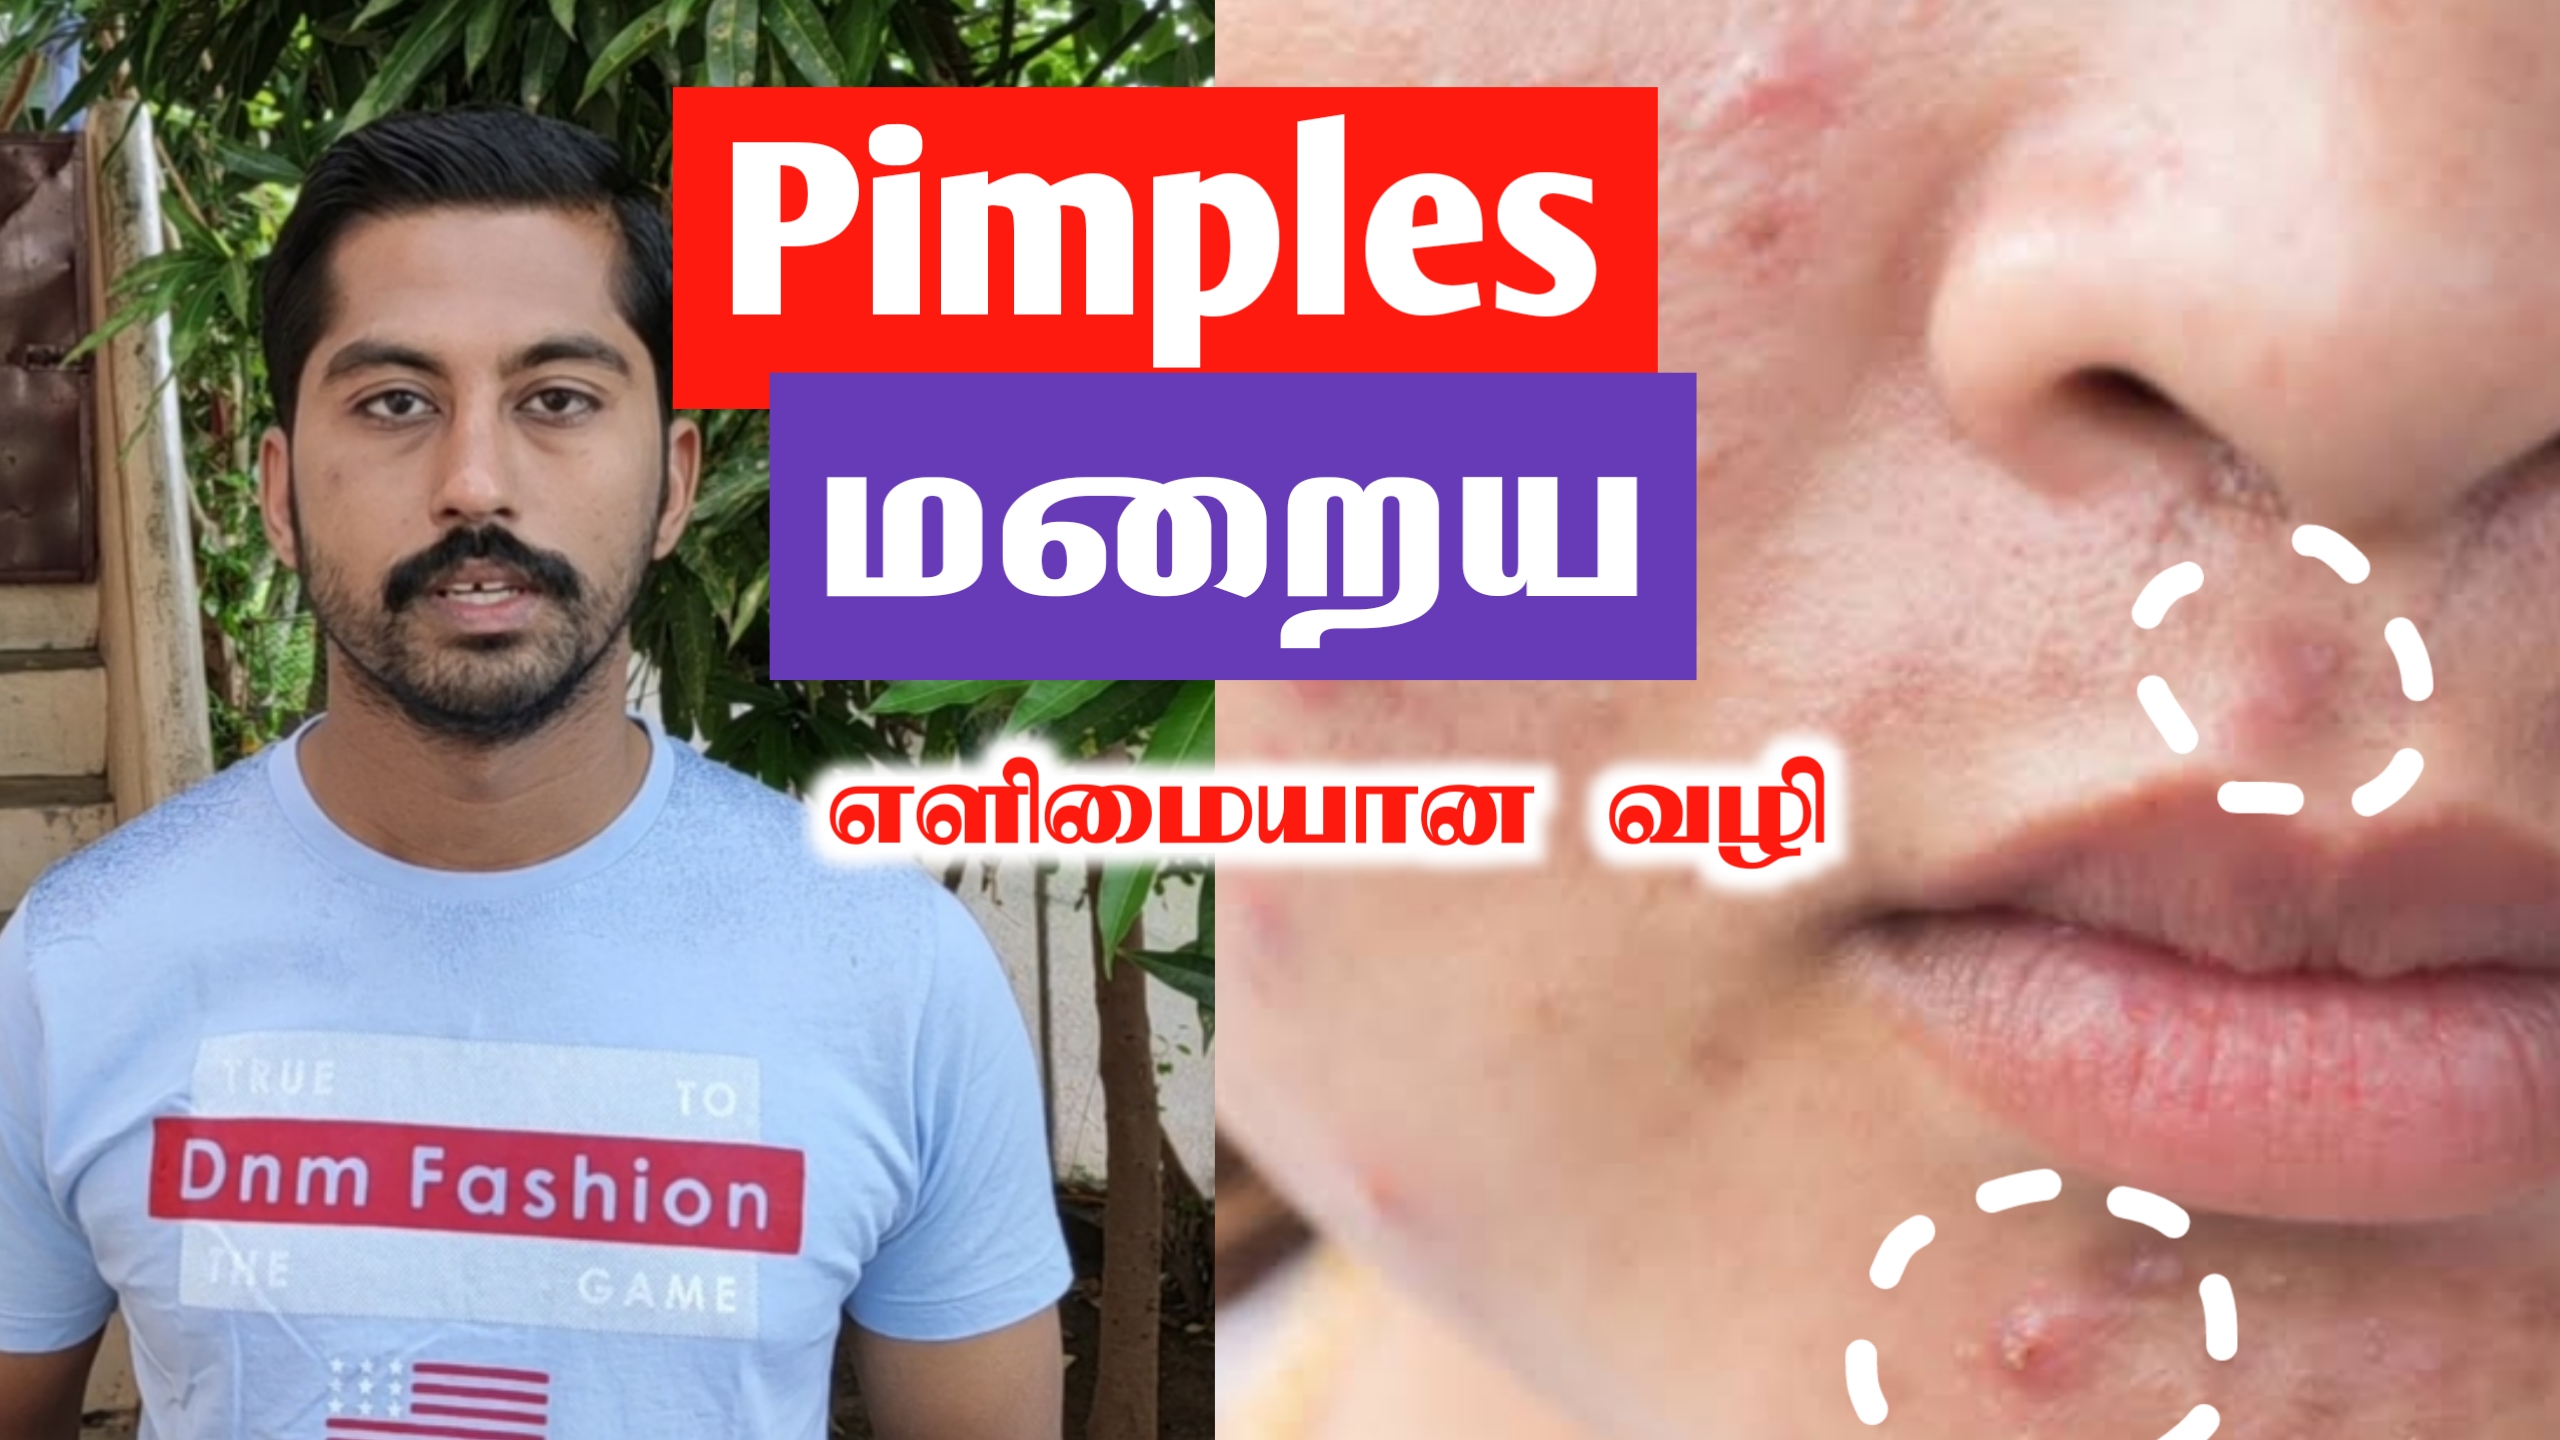 முகப்பரு நீங்க இயற்கை வழி | முகப்பரு தழும்புகள் மறைய | Pimples removal on face at home | Nextday360